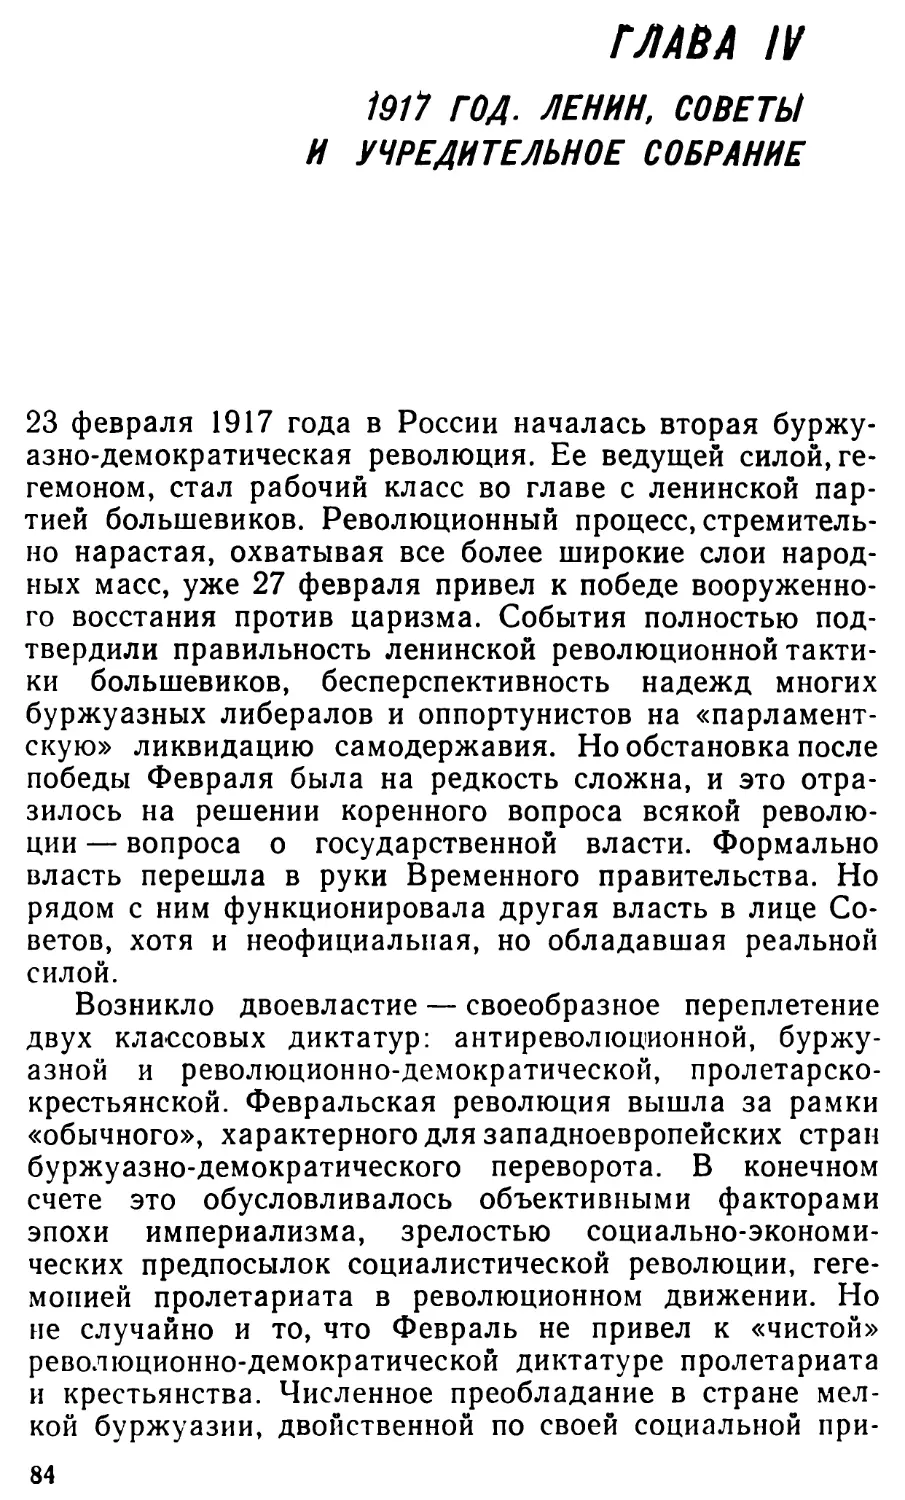 Глава IV. 1917 год. Ленин, Советы и Учредительное собрание